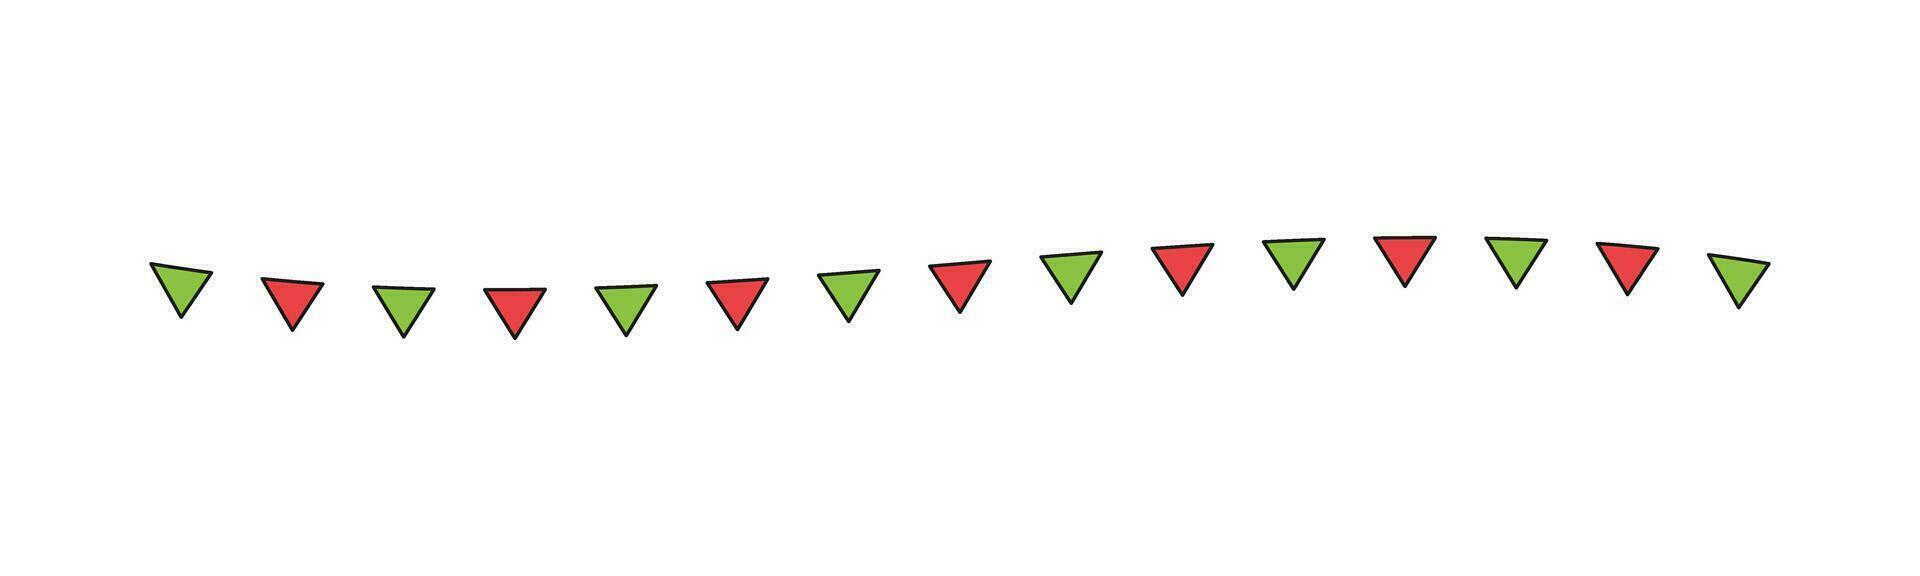 flagga separator gräns illustration vågig linje triangel mönster för jul tema begrepp för Semester tid vinter- säsong vektor